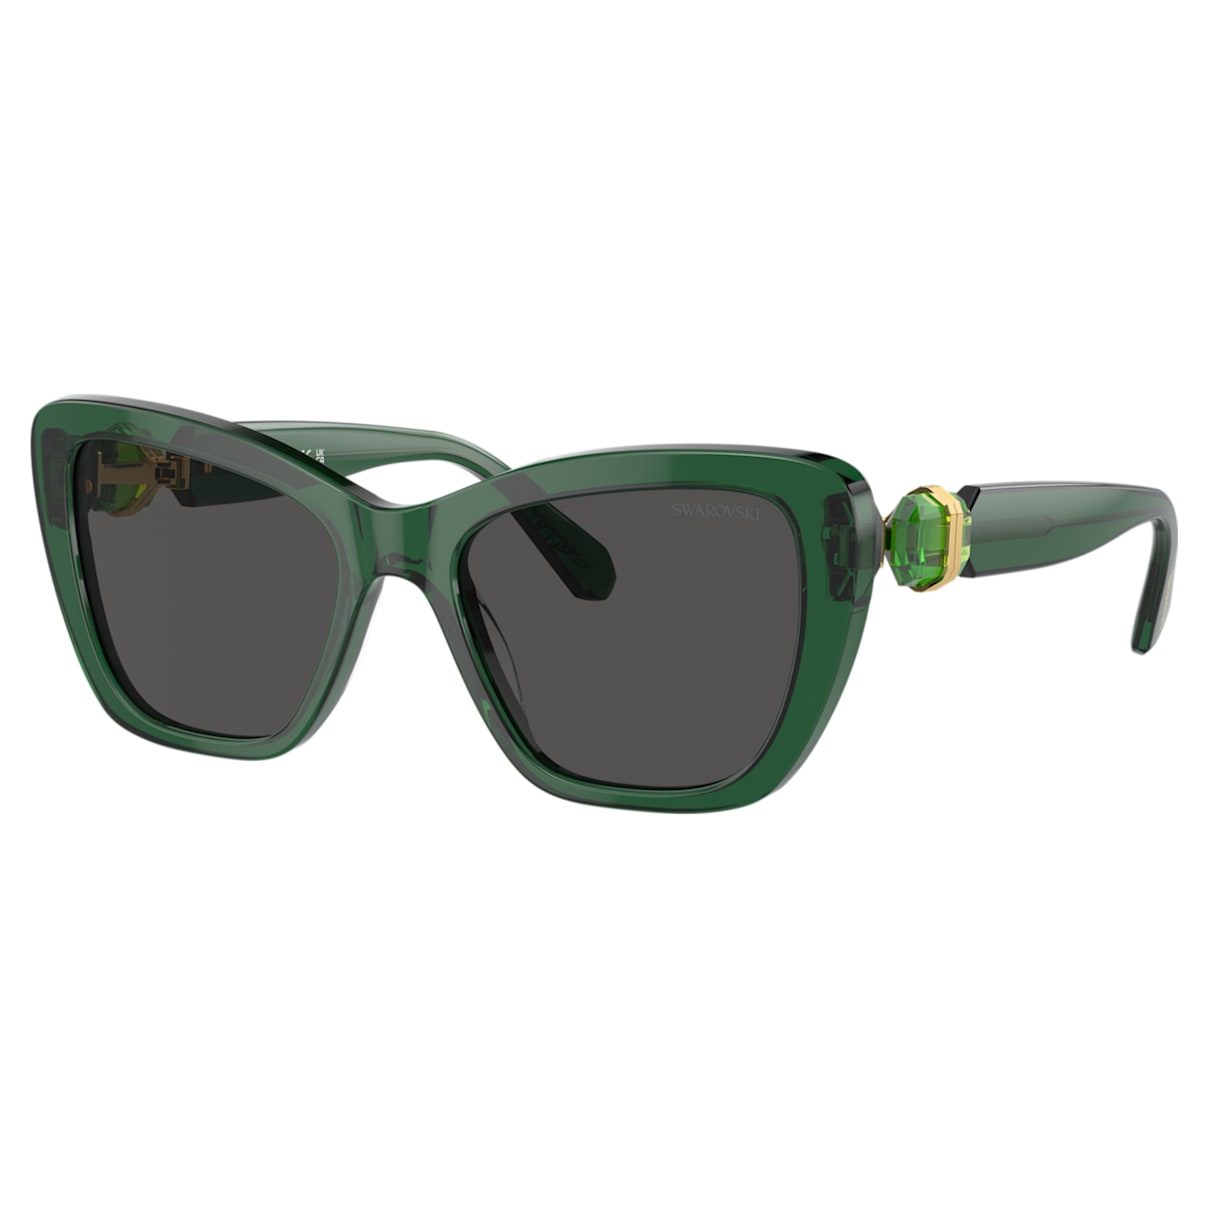 Swarovski 太陽眼鏡 In Green